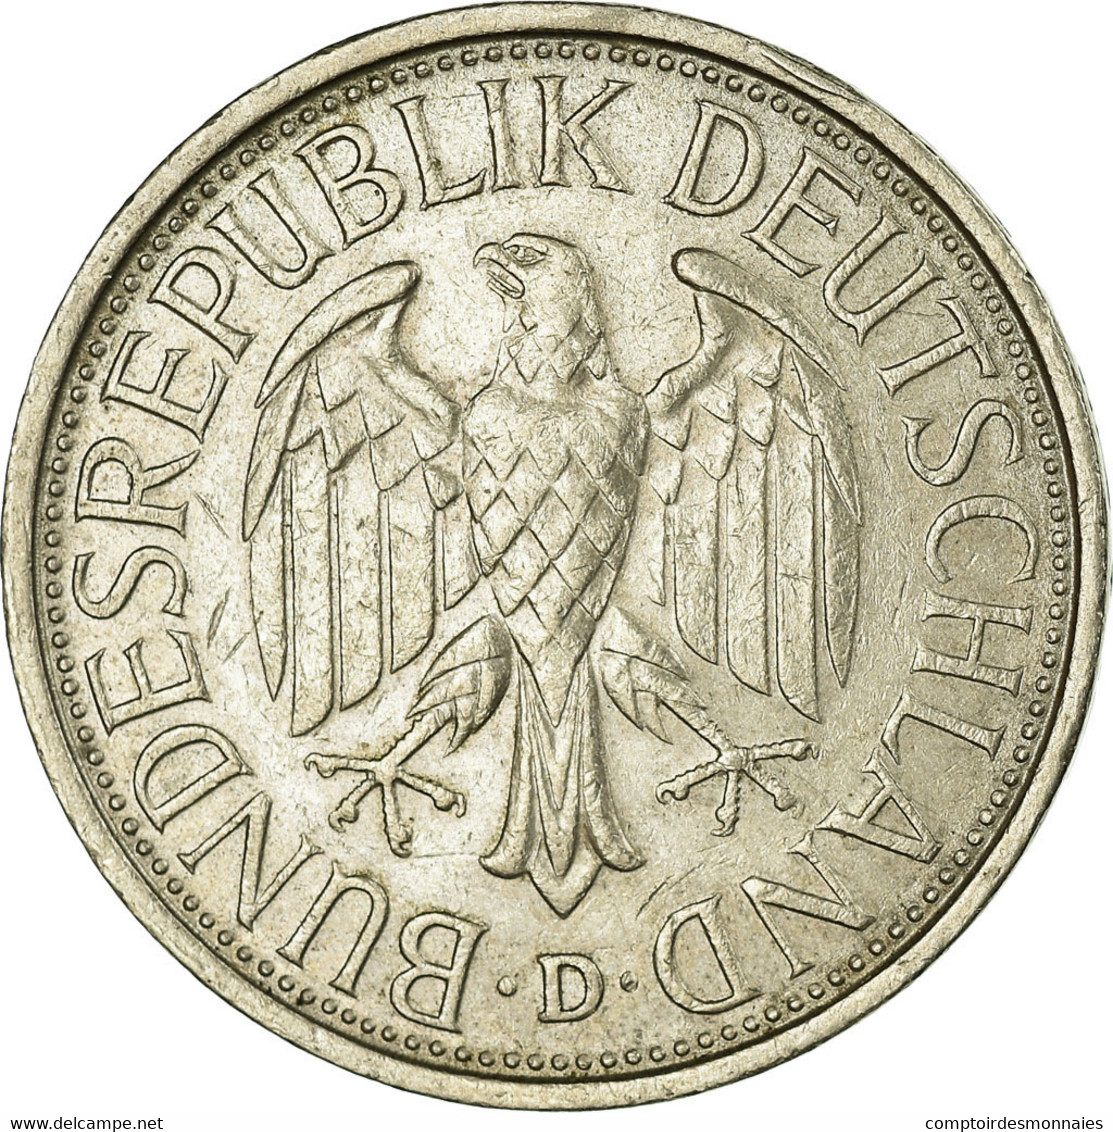 Monnaie, République Fédérale Allemande, Mark, 1981, Munich, TTB - 1 Marco